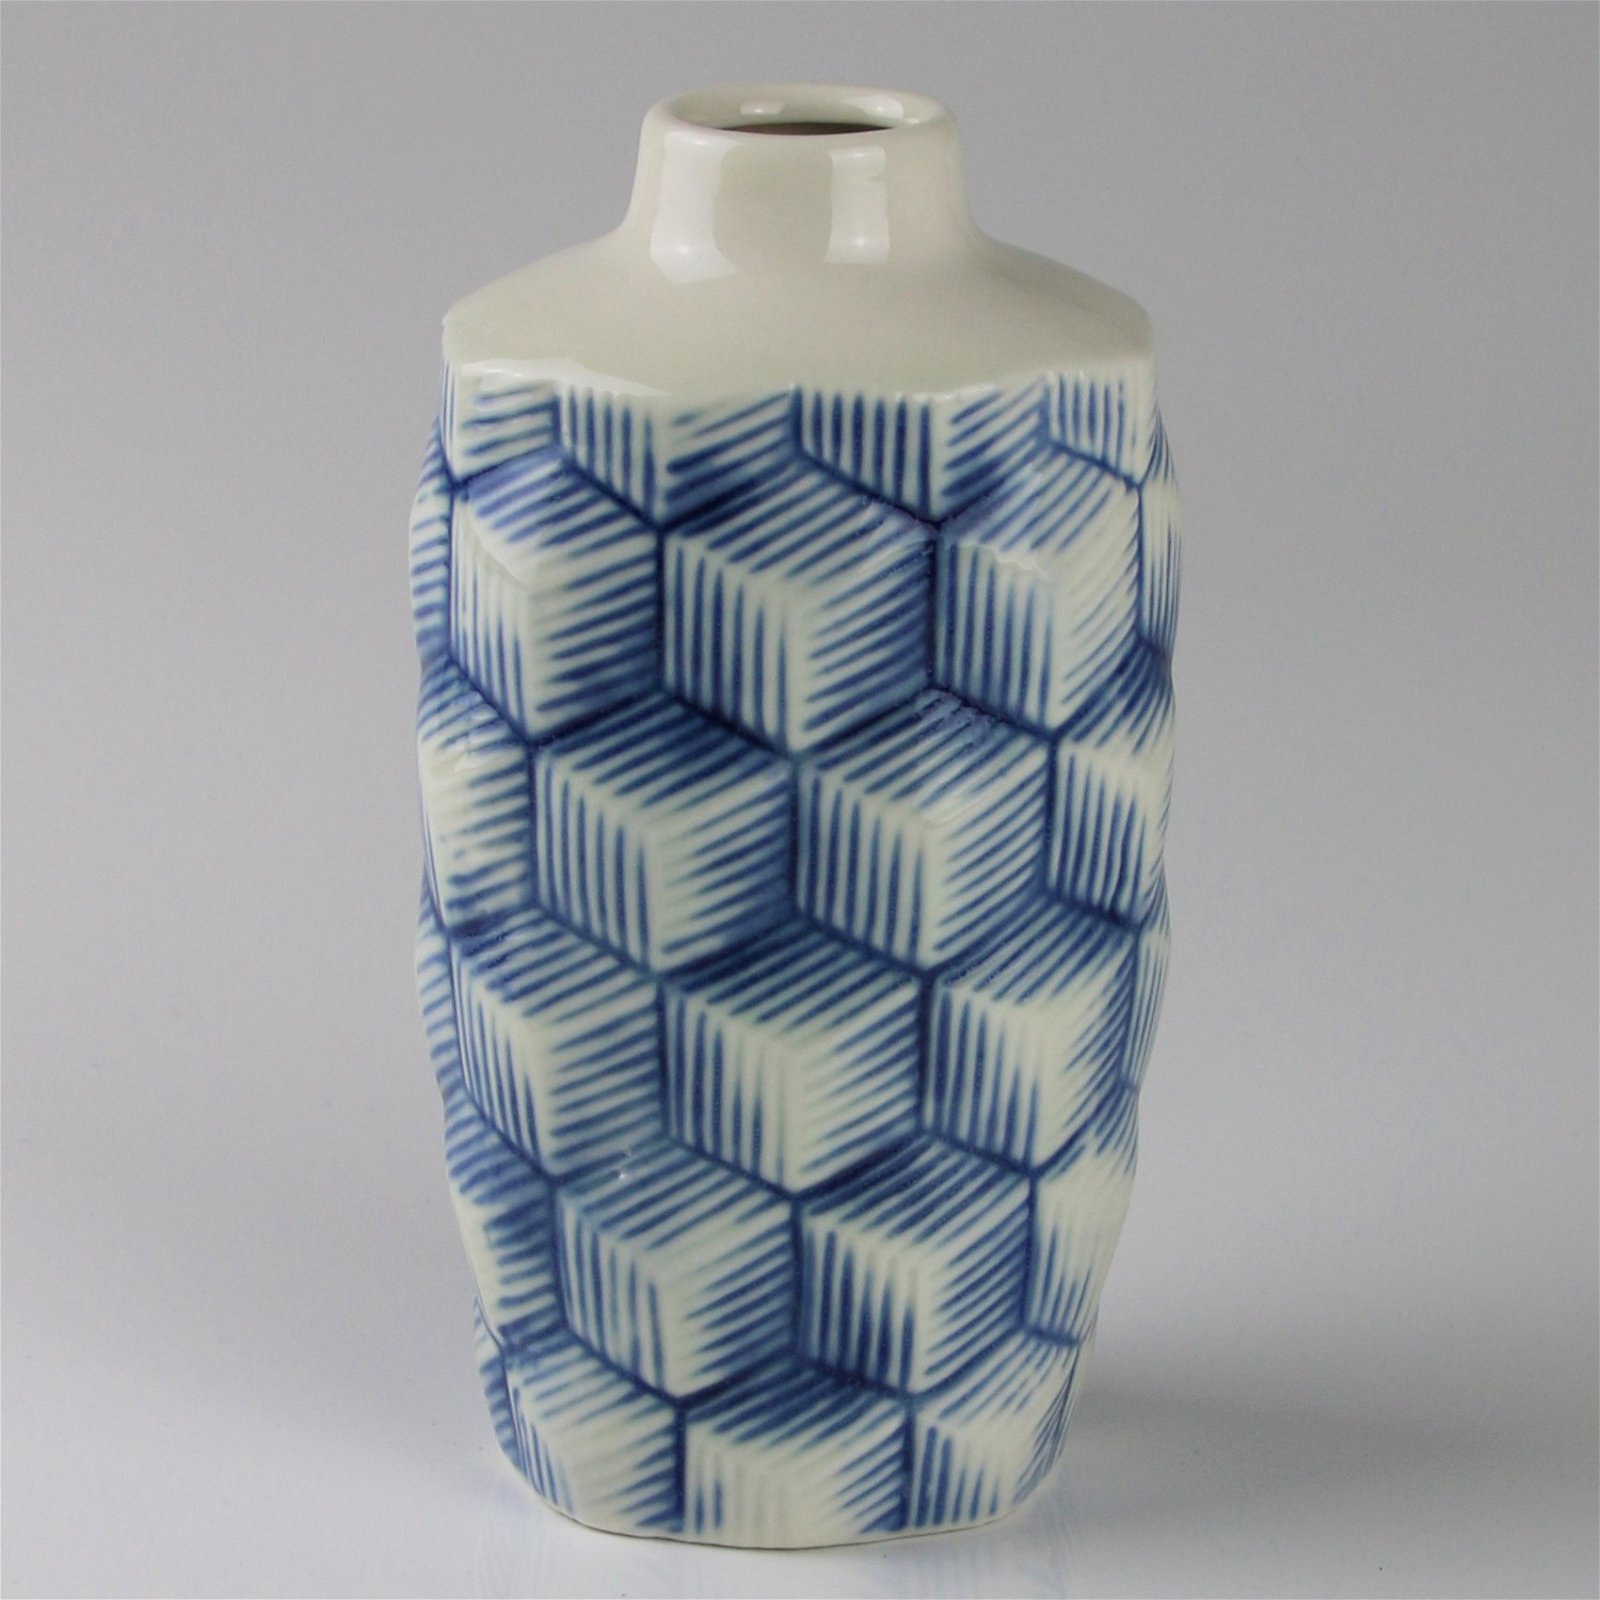 Keramikvase mit Rautenmuster, blau-weiß, 8 x 9 x H 17 cm